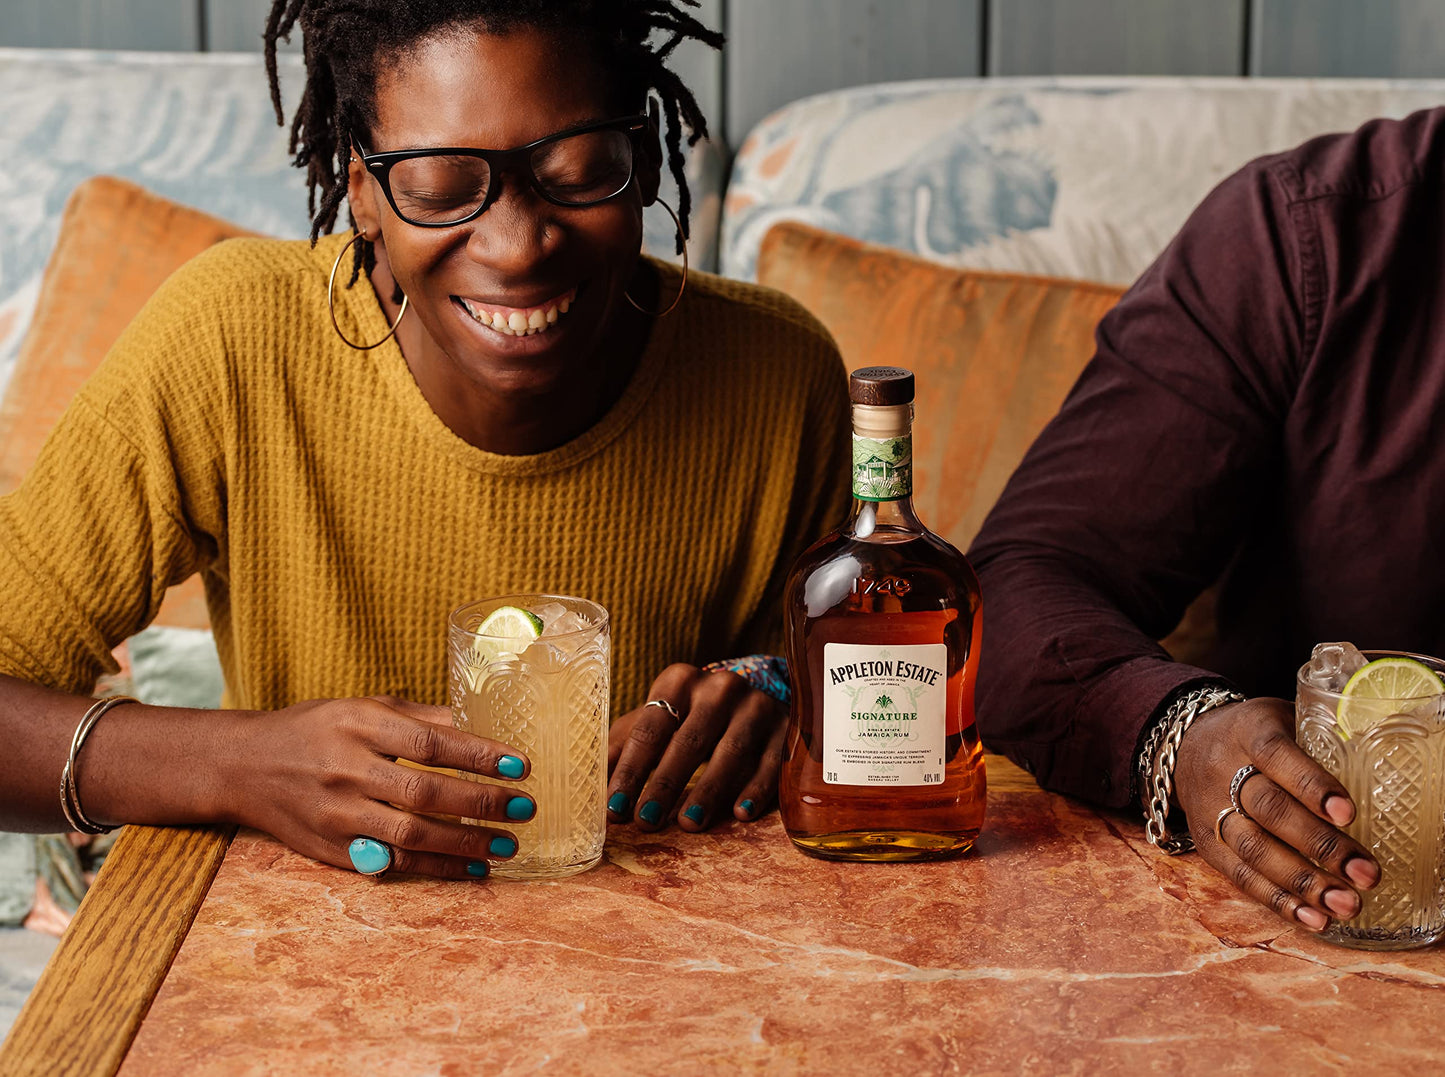 Appleton Estate Signature Jamaica Rum, 70cl & Wray and Nephew Rum 70 cl, 63% vol - White Overproof Jamaica Rum